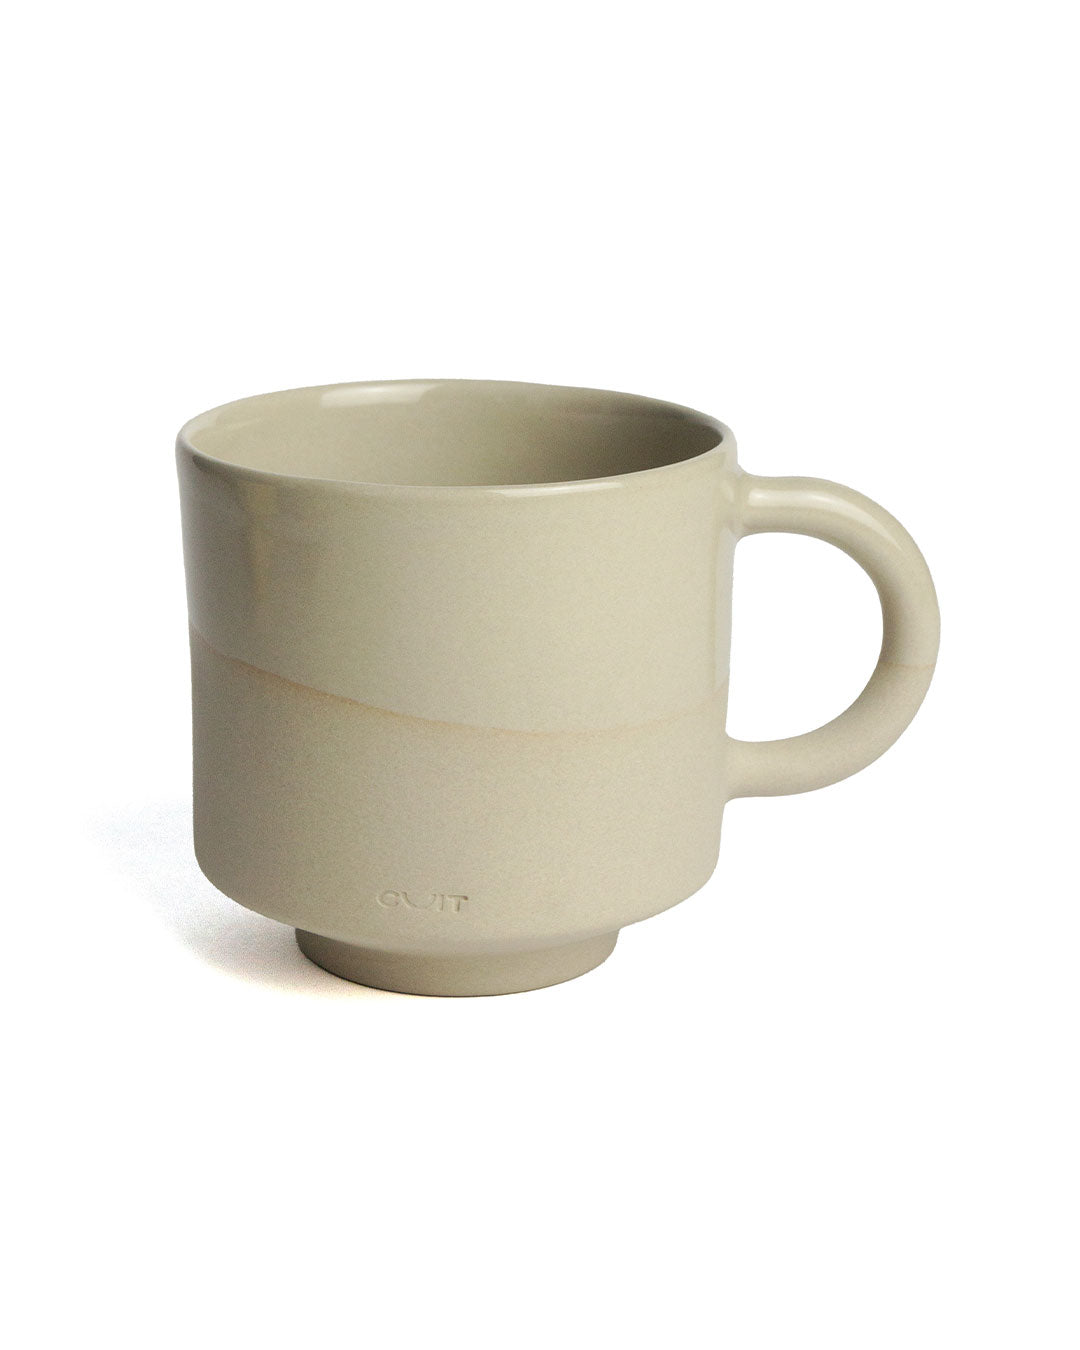 Cuit Latte Cups MIX - Set of 6 (-26%)